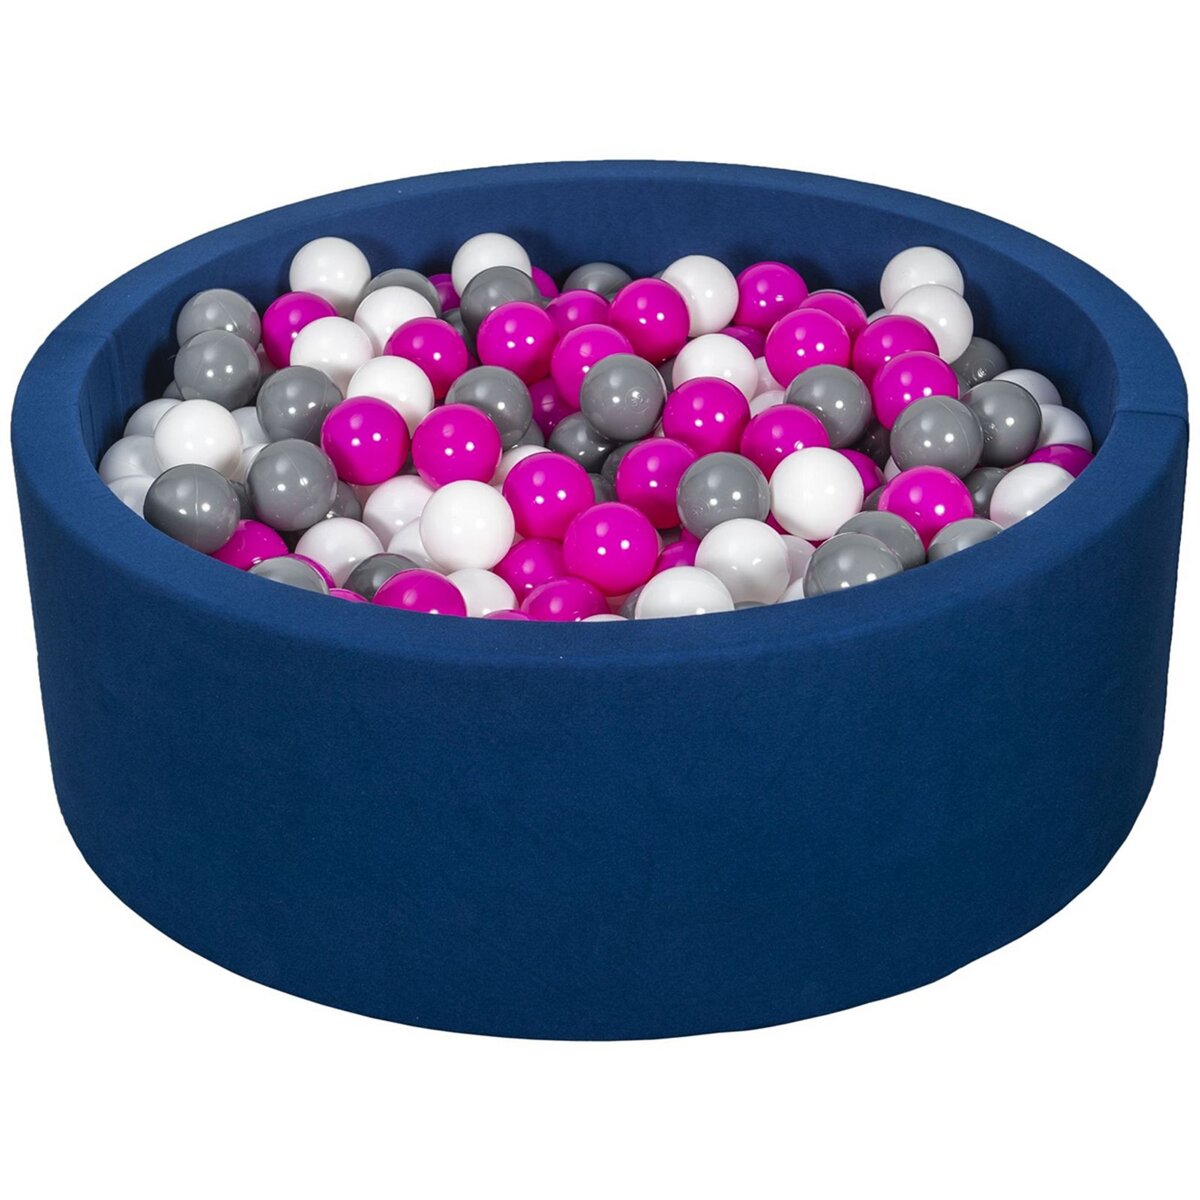  Piscine à balles Aire de jeu + 450 balles bleu marine blanc,rose,gris